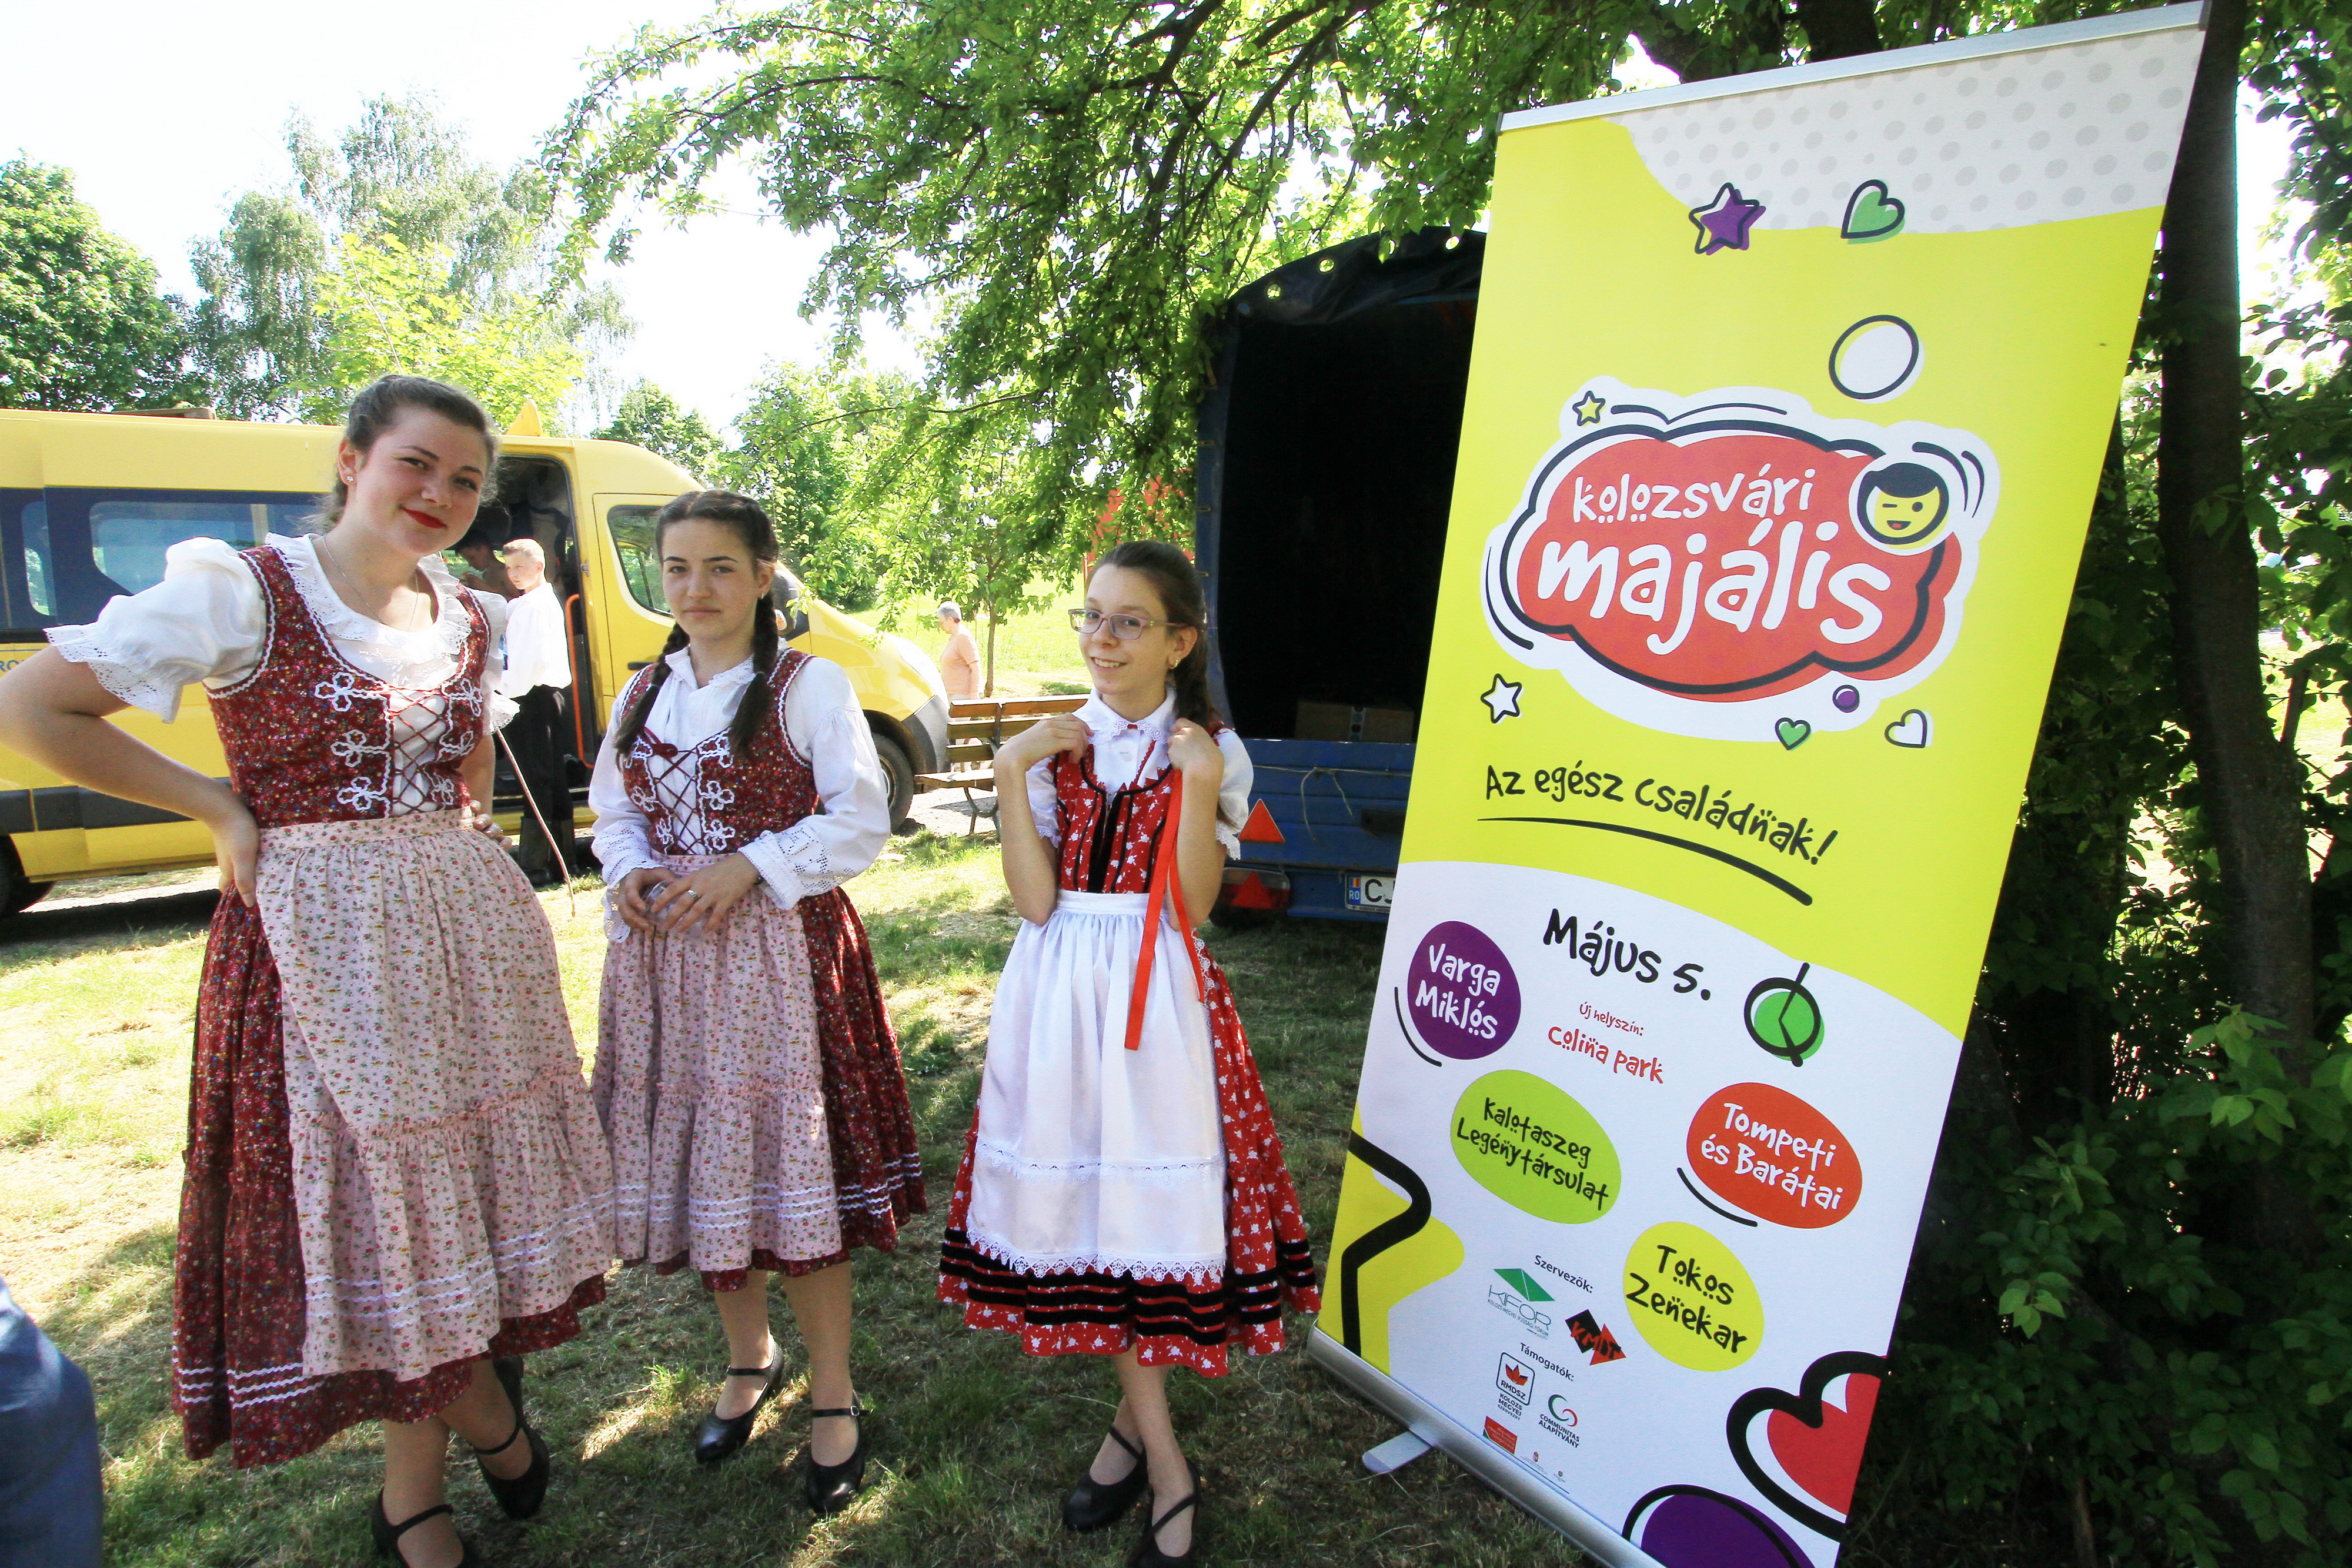 Kolozsvári majális: jó hangulat, szórakoztató kikapcsolódás